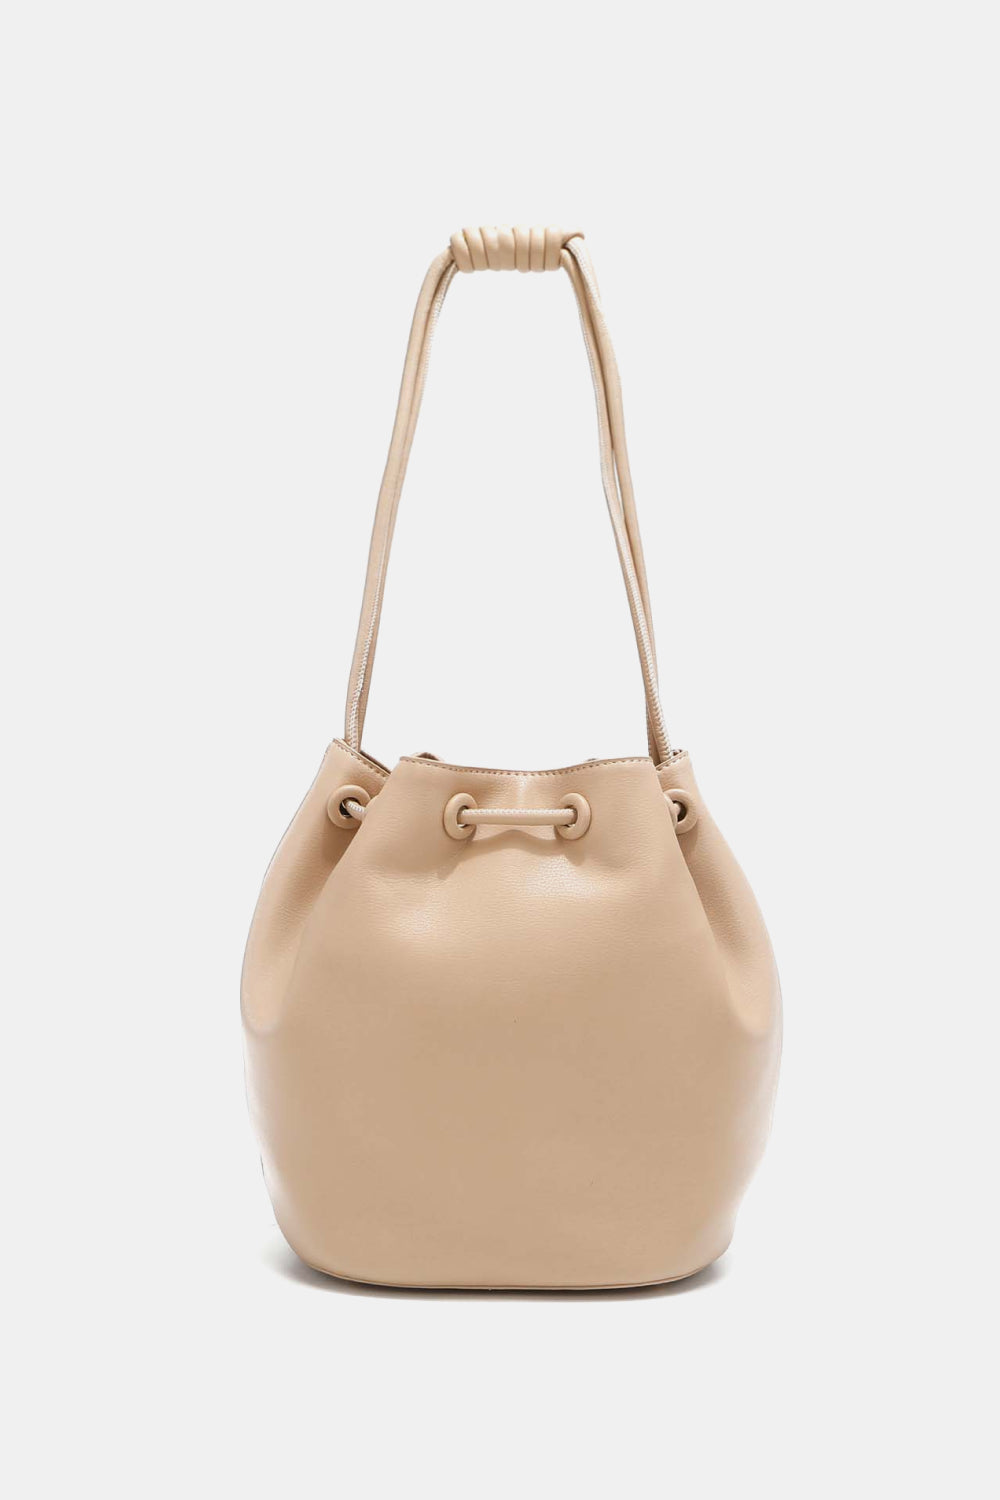 Nicole Lee USA Amy Studded Bucket Handbag - Tigbul's Fashion